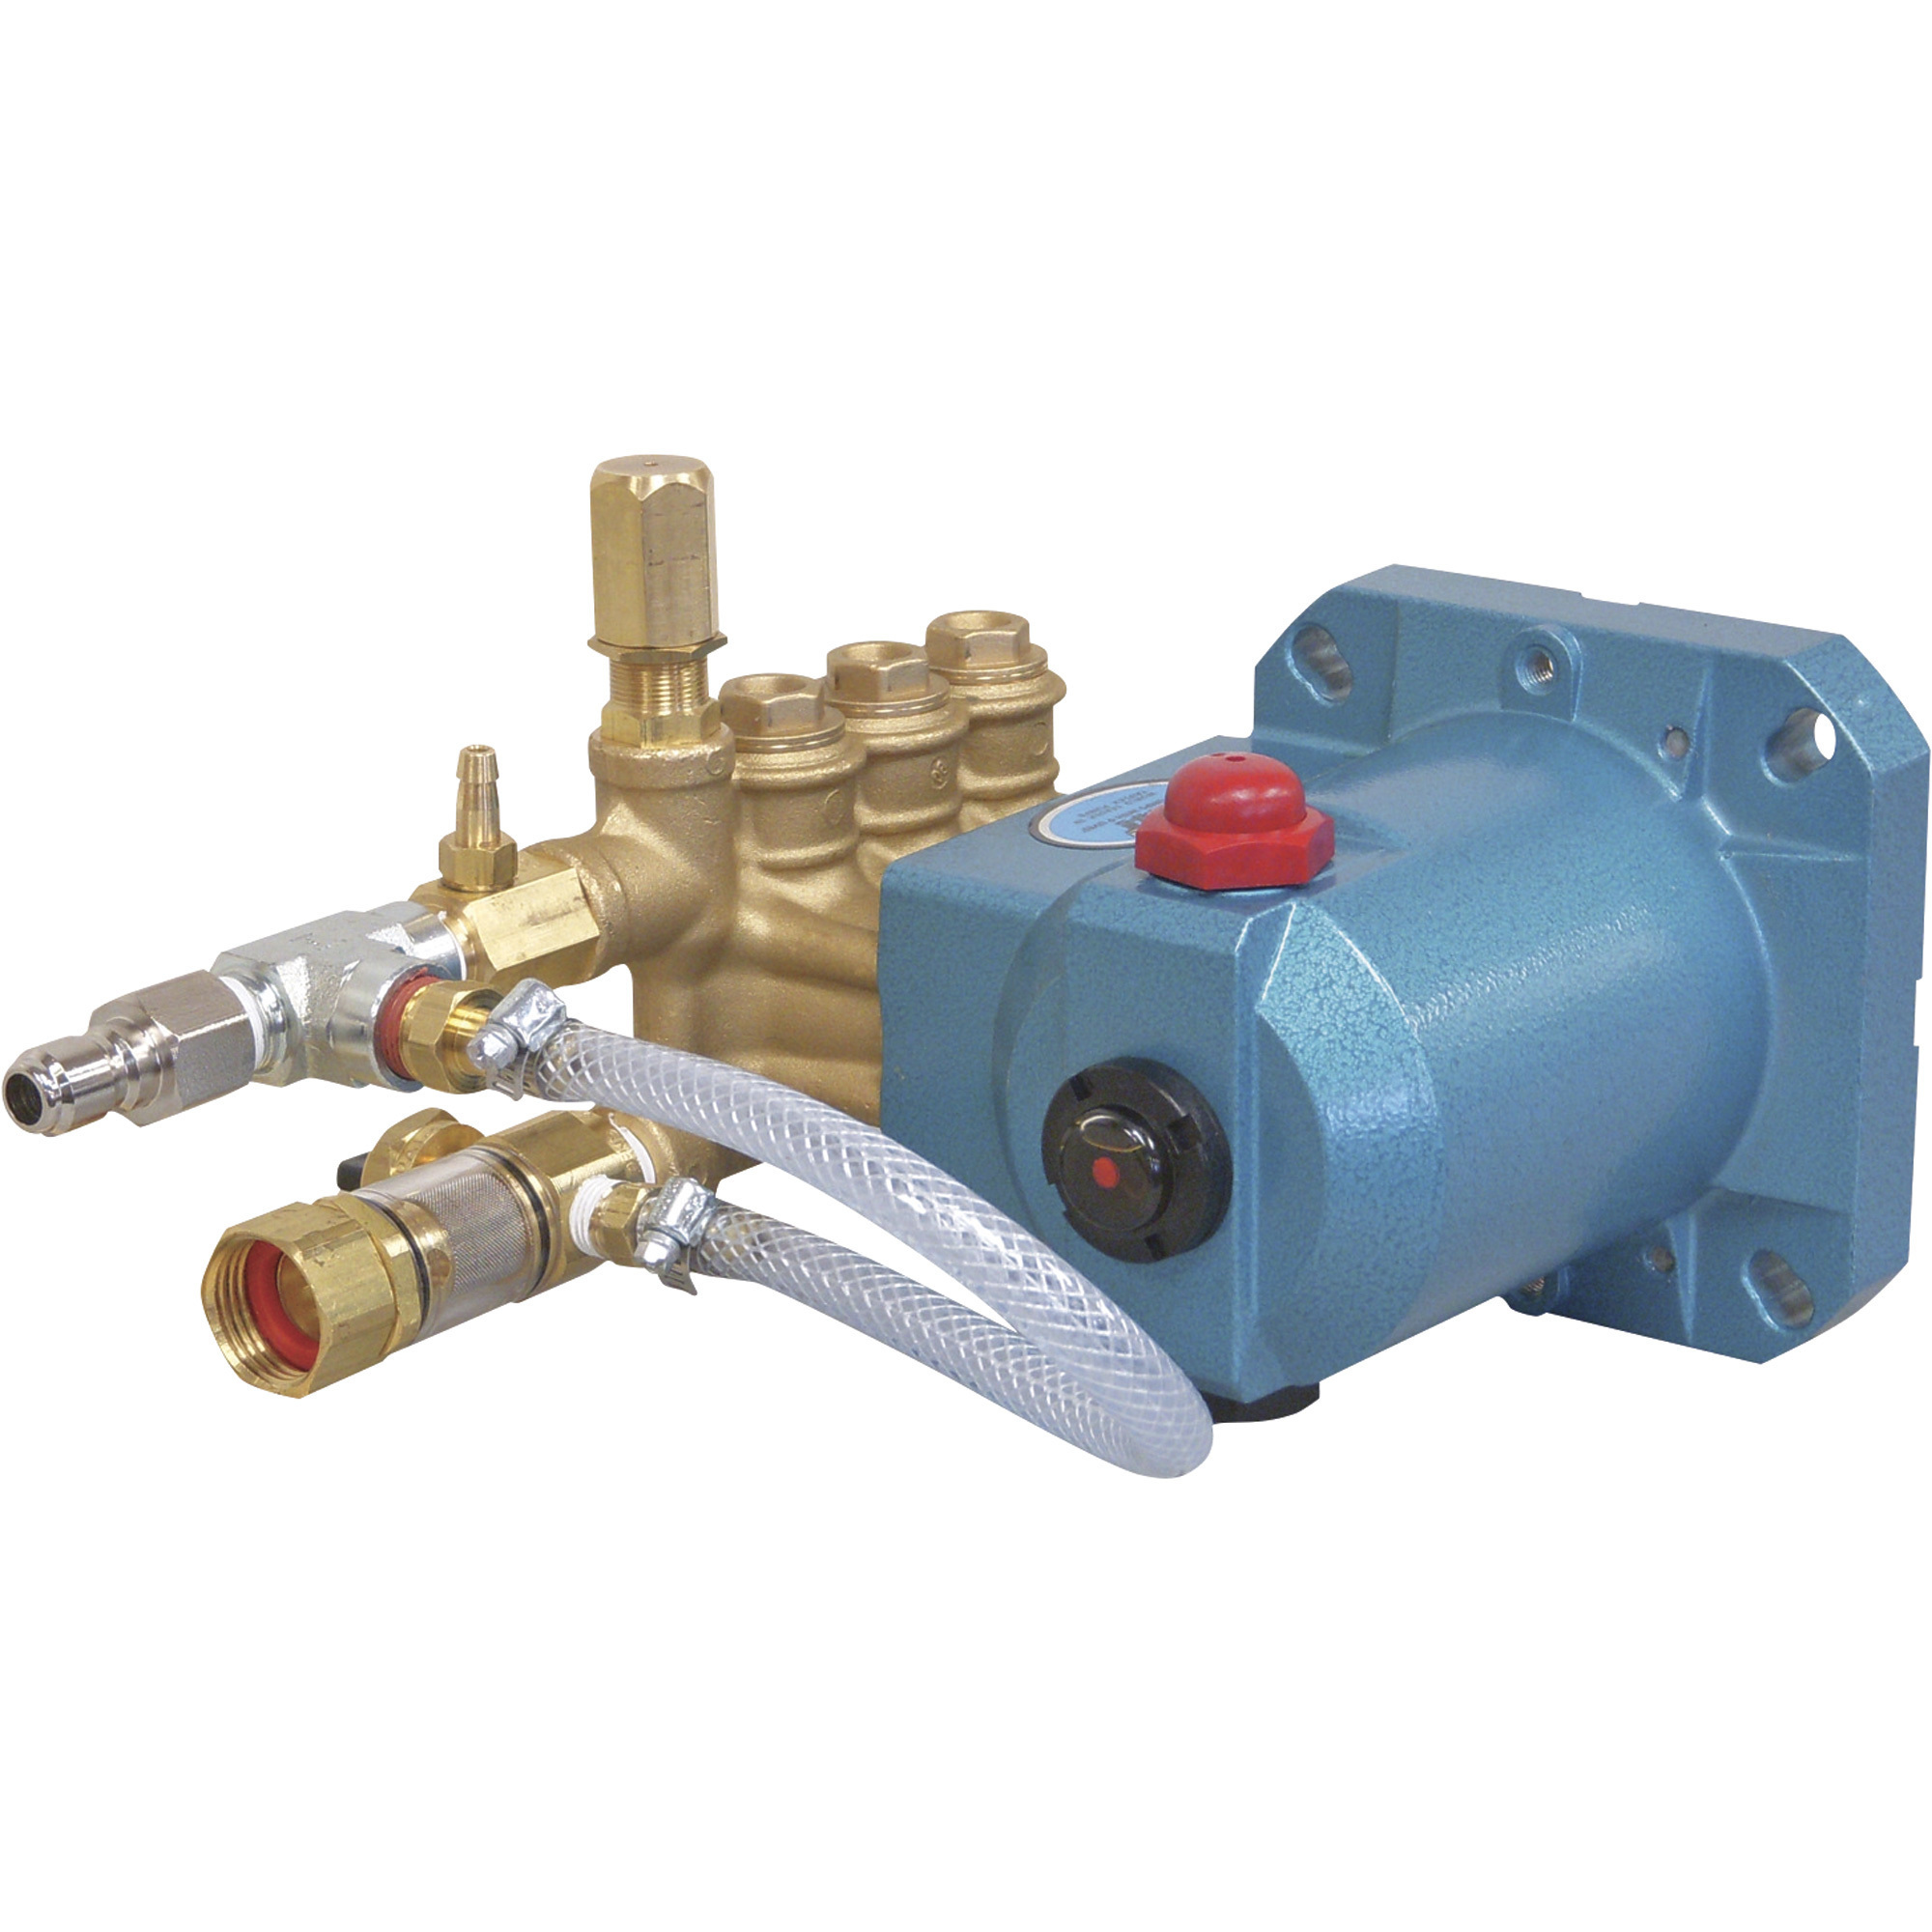 Cat Pumps Pressure Washer Pump, 3000 PSI, 2.5 GPM, Direct Drive, Electric